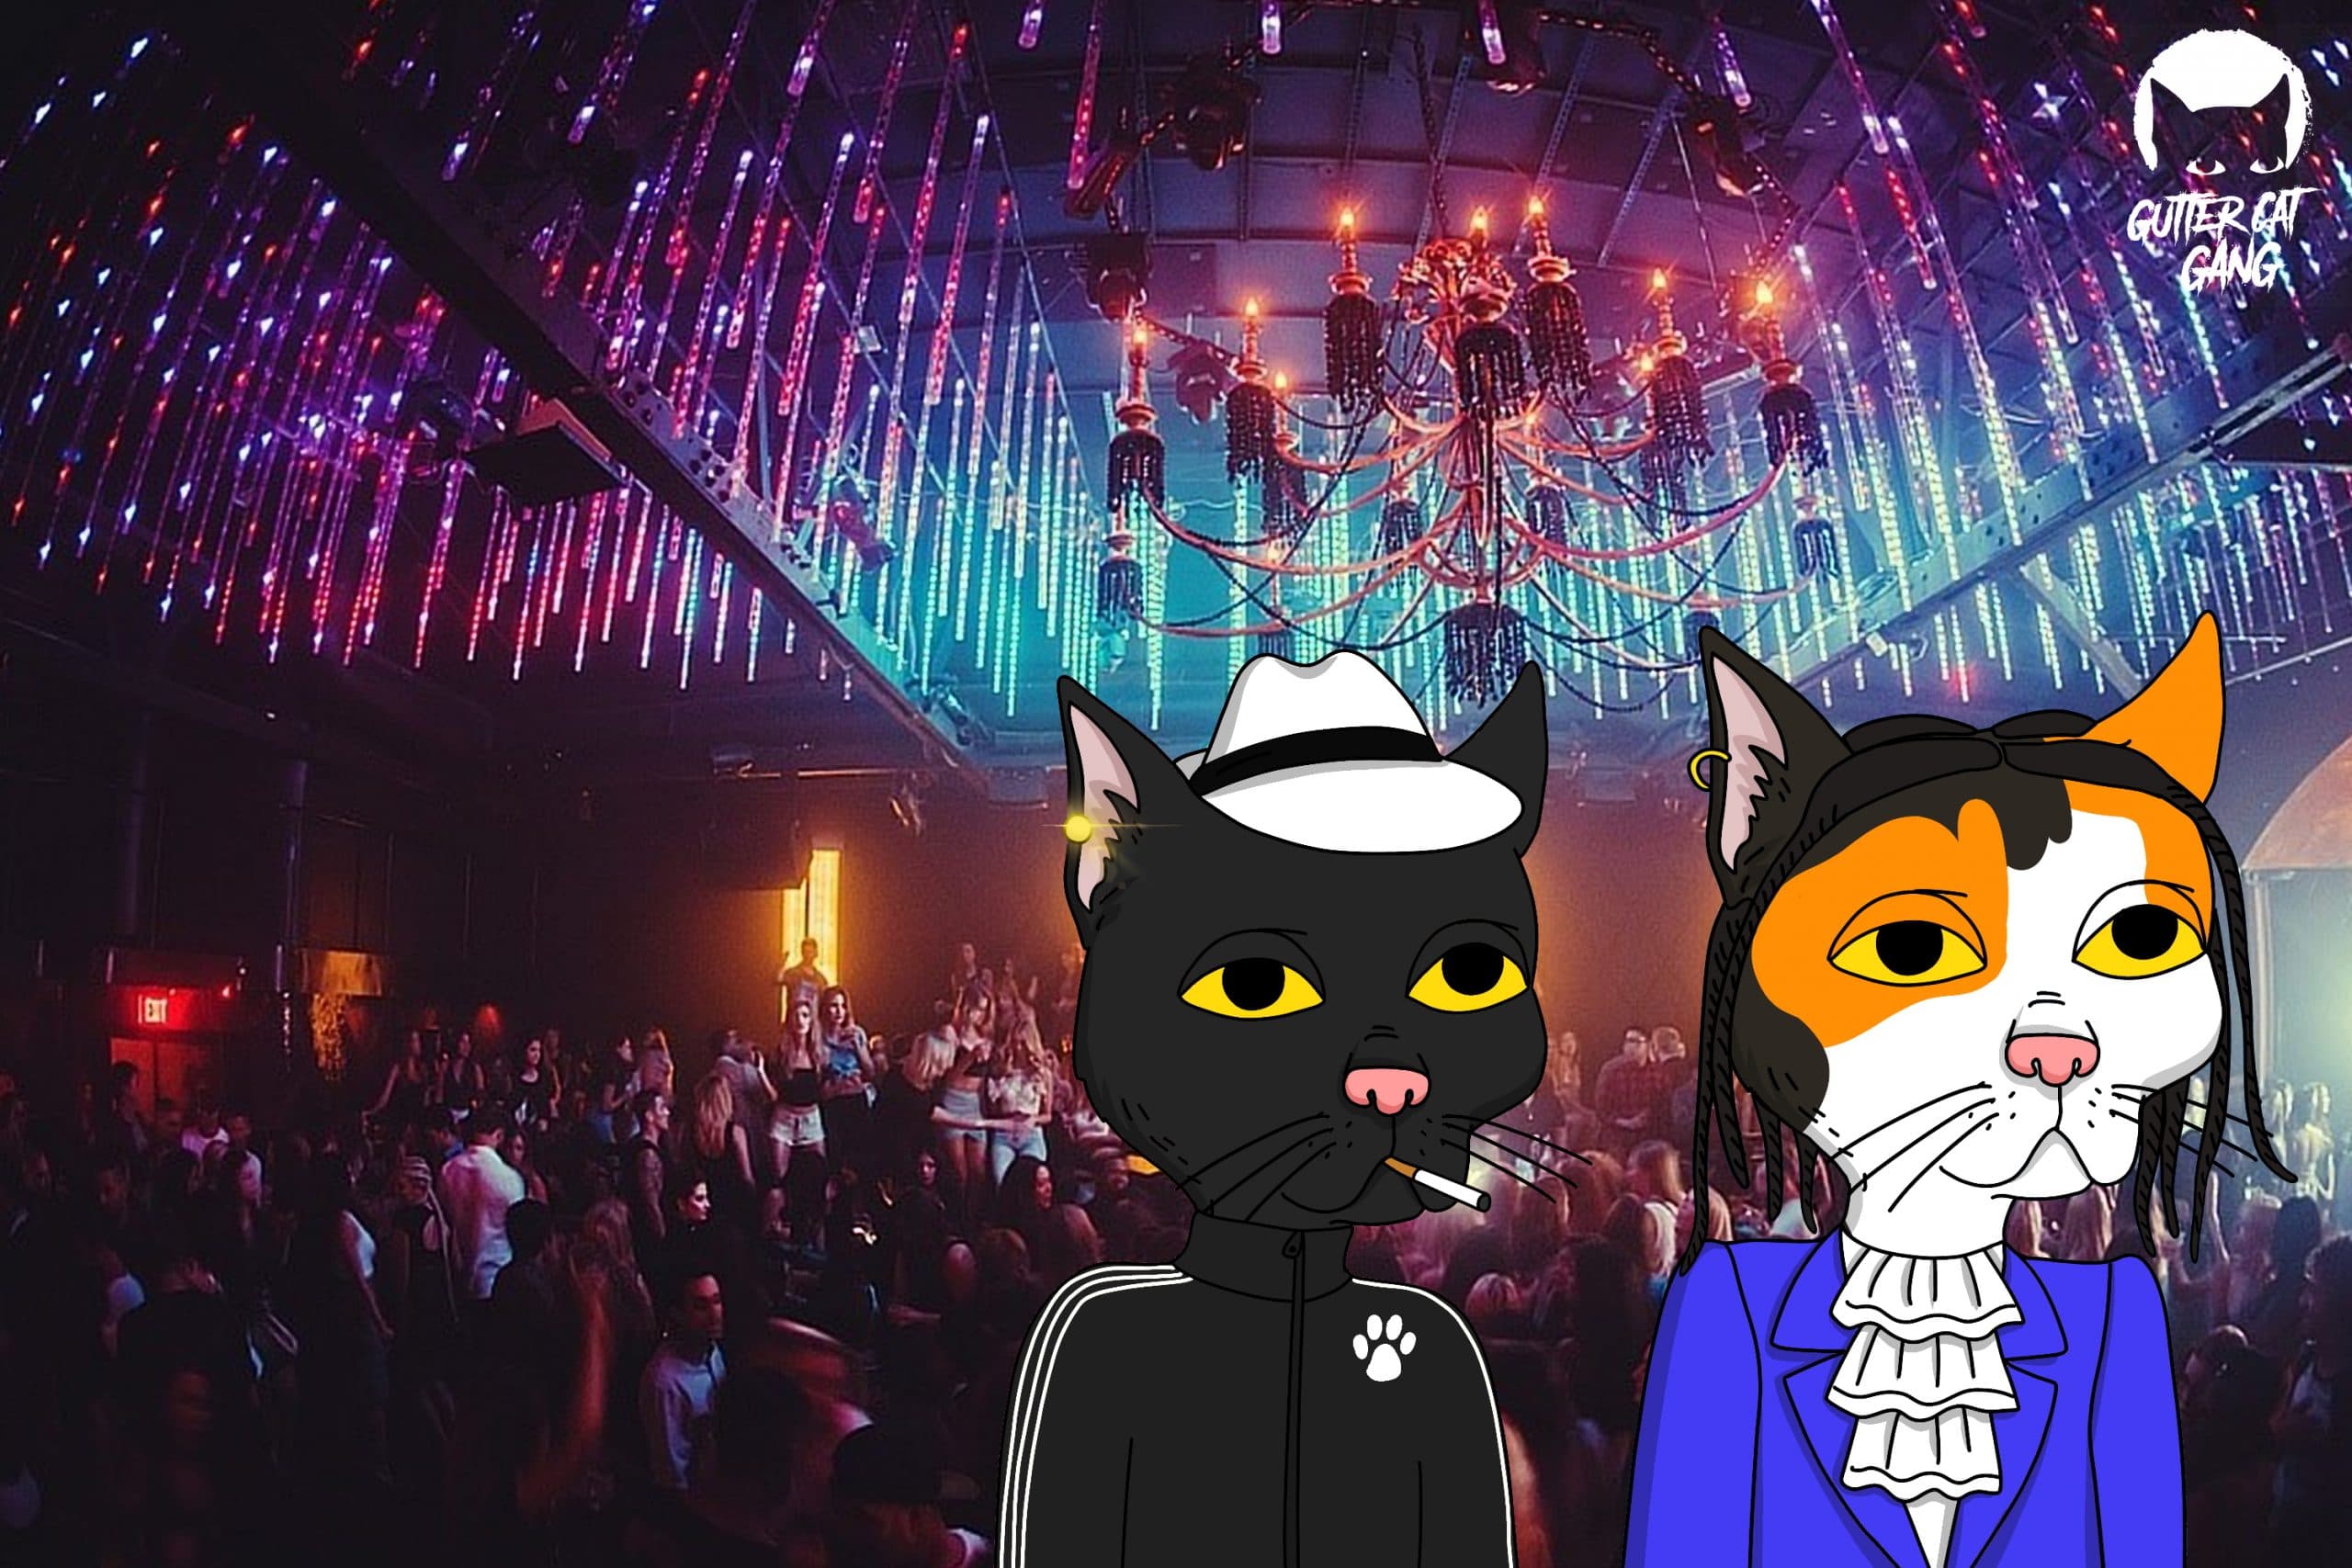 Gutter Cat Gang Las Vegas Party